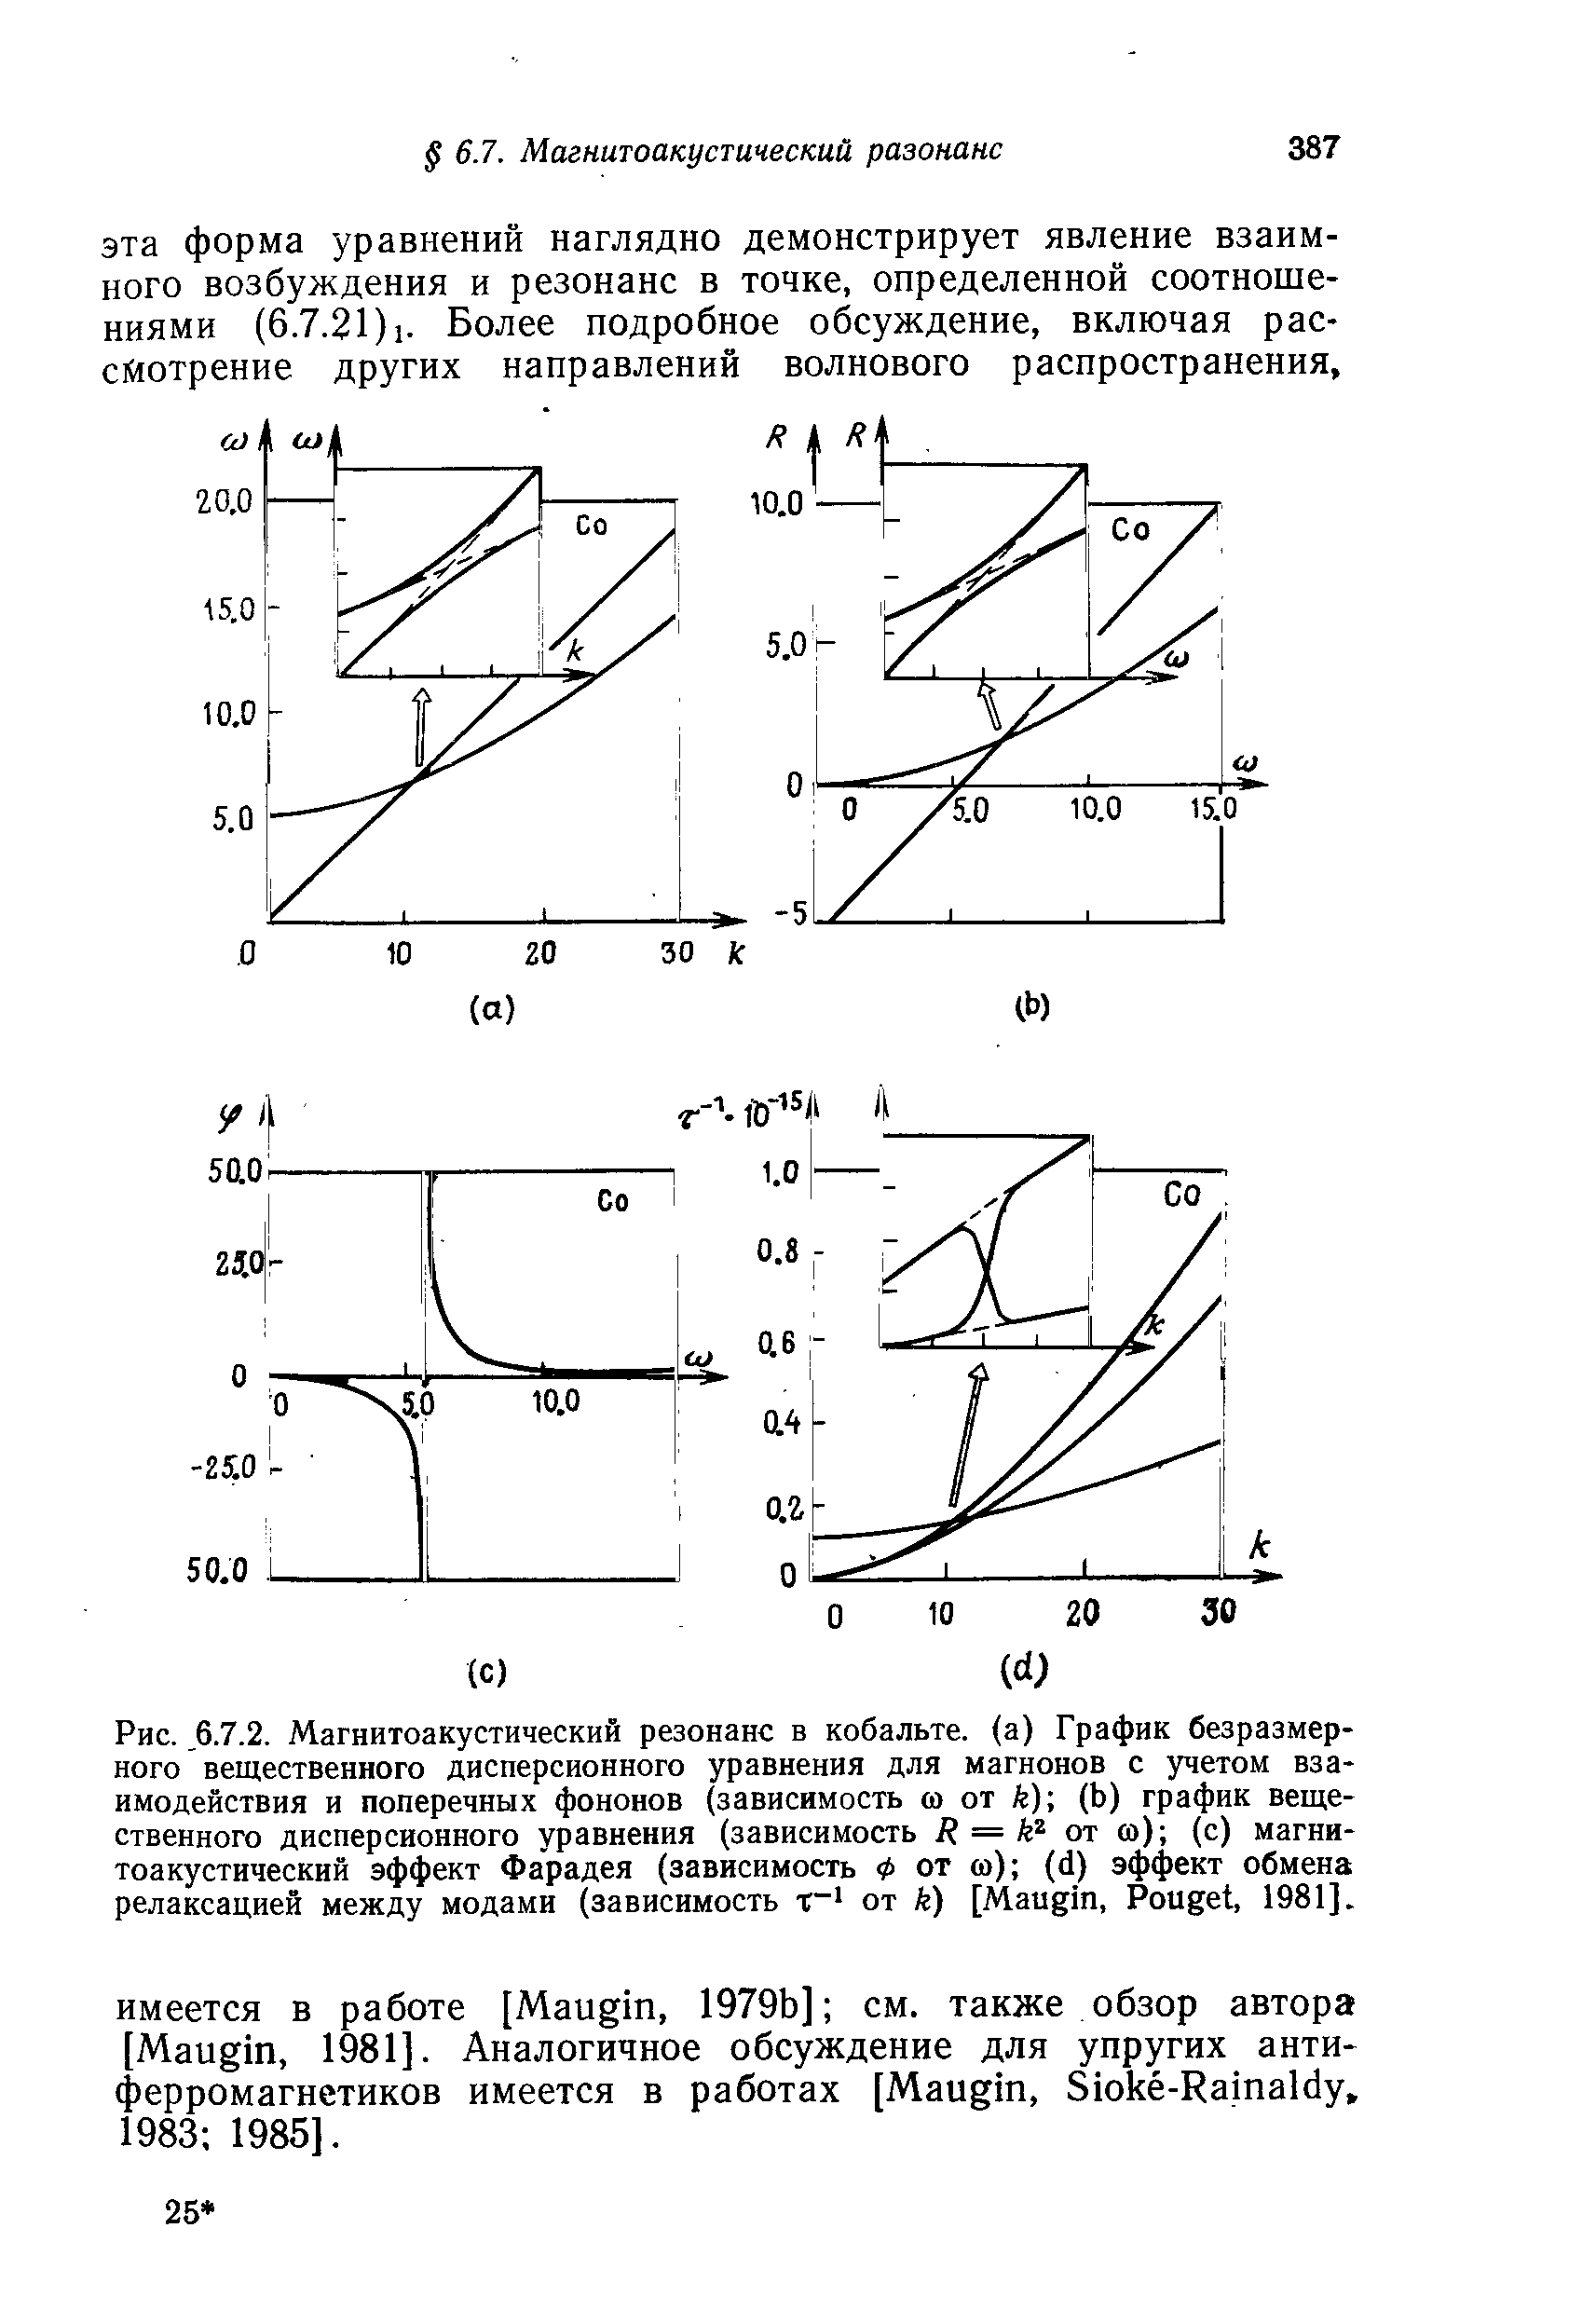 Рис., 6.7.2. Магнитоакустический резонанс в кобальте, (а) График безразмерного вещественного <a href="/info/23056">дисперсионного уравнения</a> для магнонов с учетом взаимодействия и поперечных фононов (зависимость ш от k) (Ь) график вещественного <a href="/info/23056">дисперсионного уравнения</a> (зависимость R = от а>) (с) магнитоакустический эффект Фарадея (зависимость Ф от ш) (d) эффект обмена релаксацией между модами (зависимость от к) [Maugin, Pouget, 1981].
